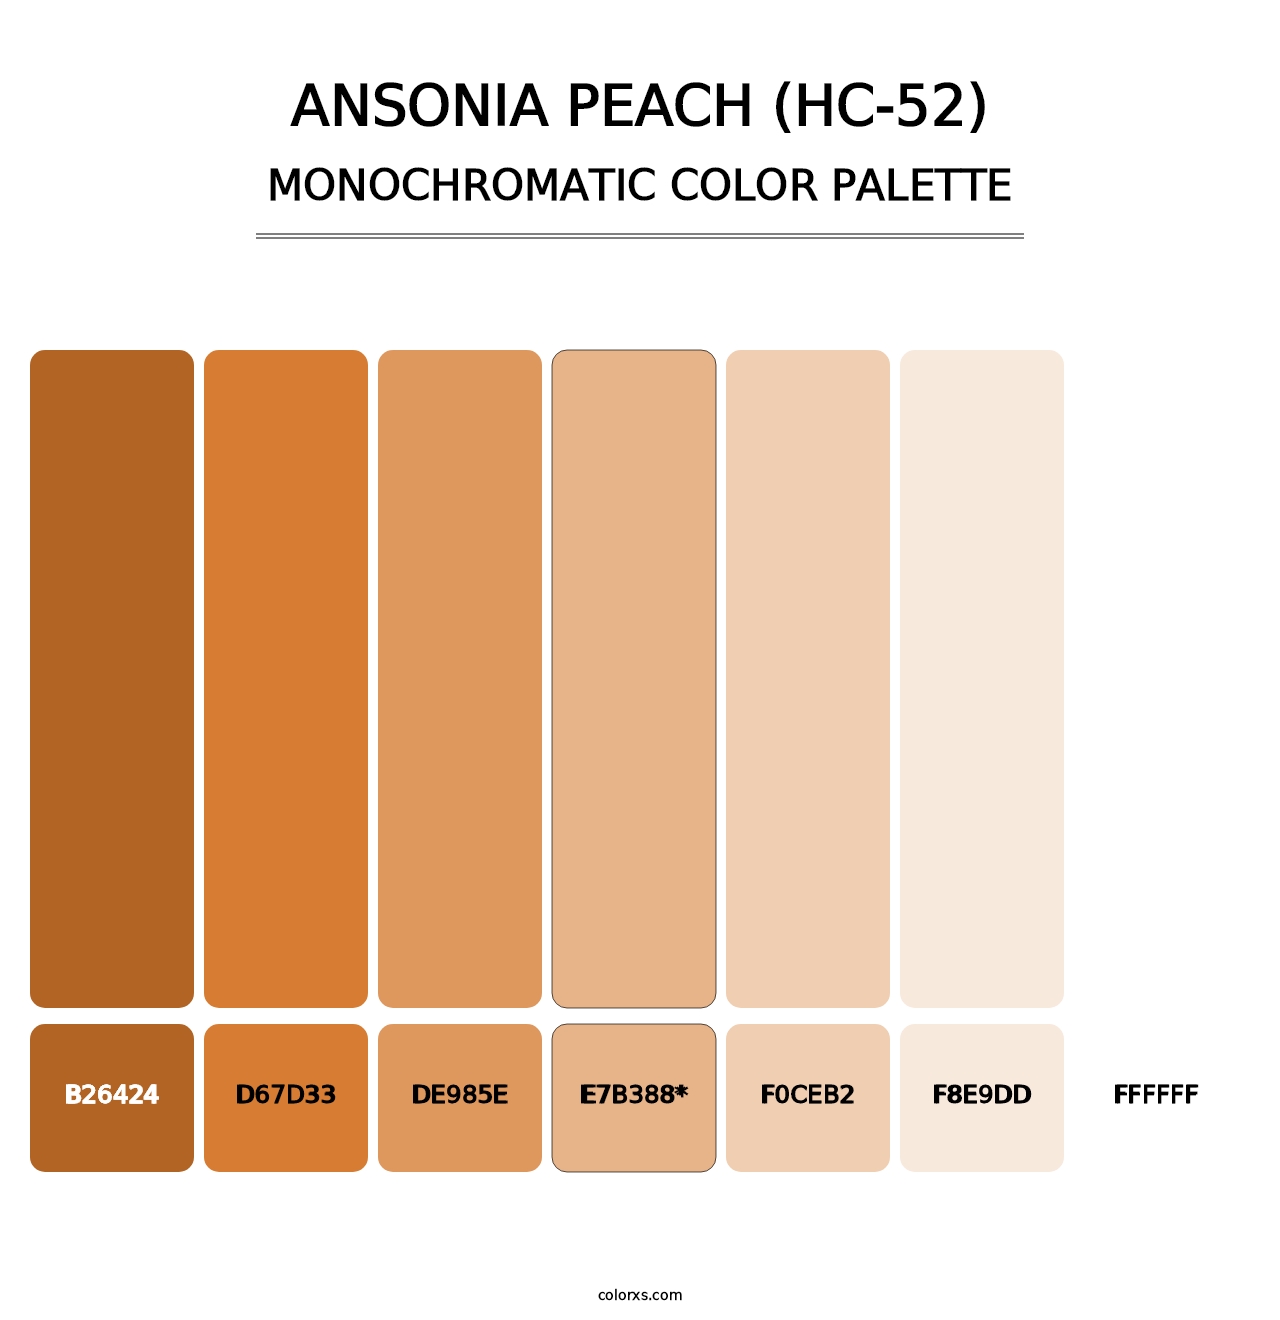 Ansonia Peach (HC-52) - Monochromatic Color Palette